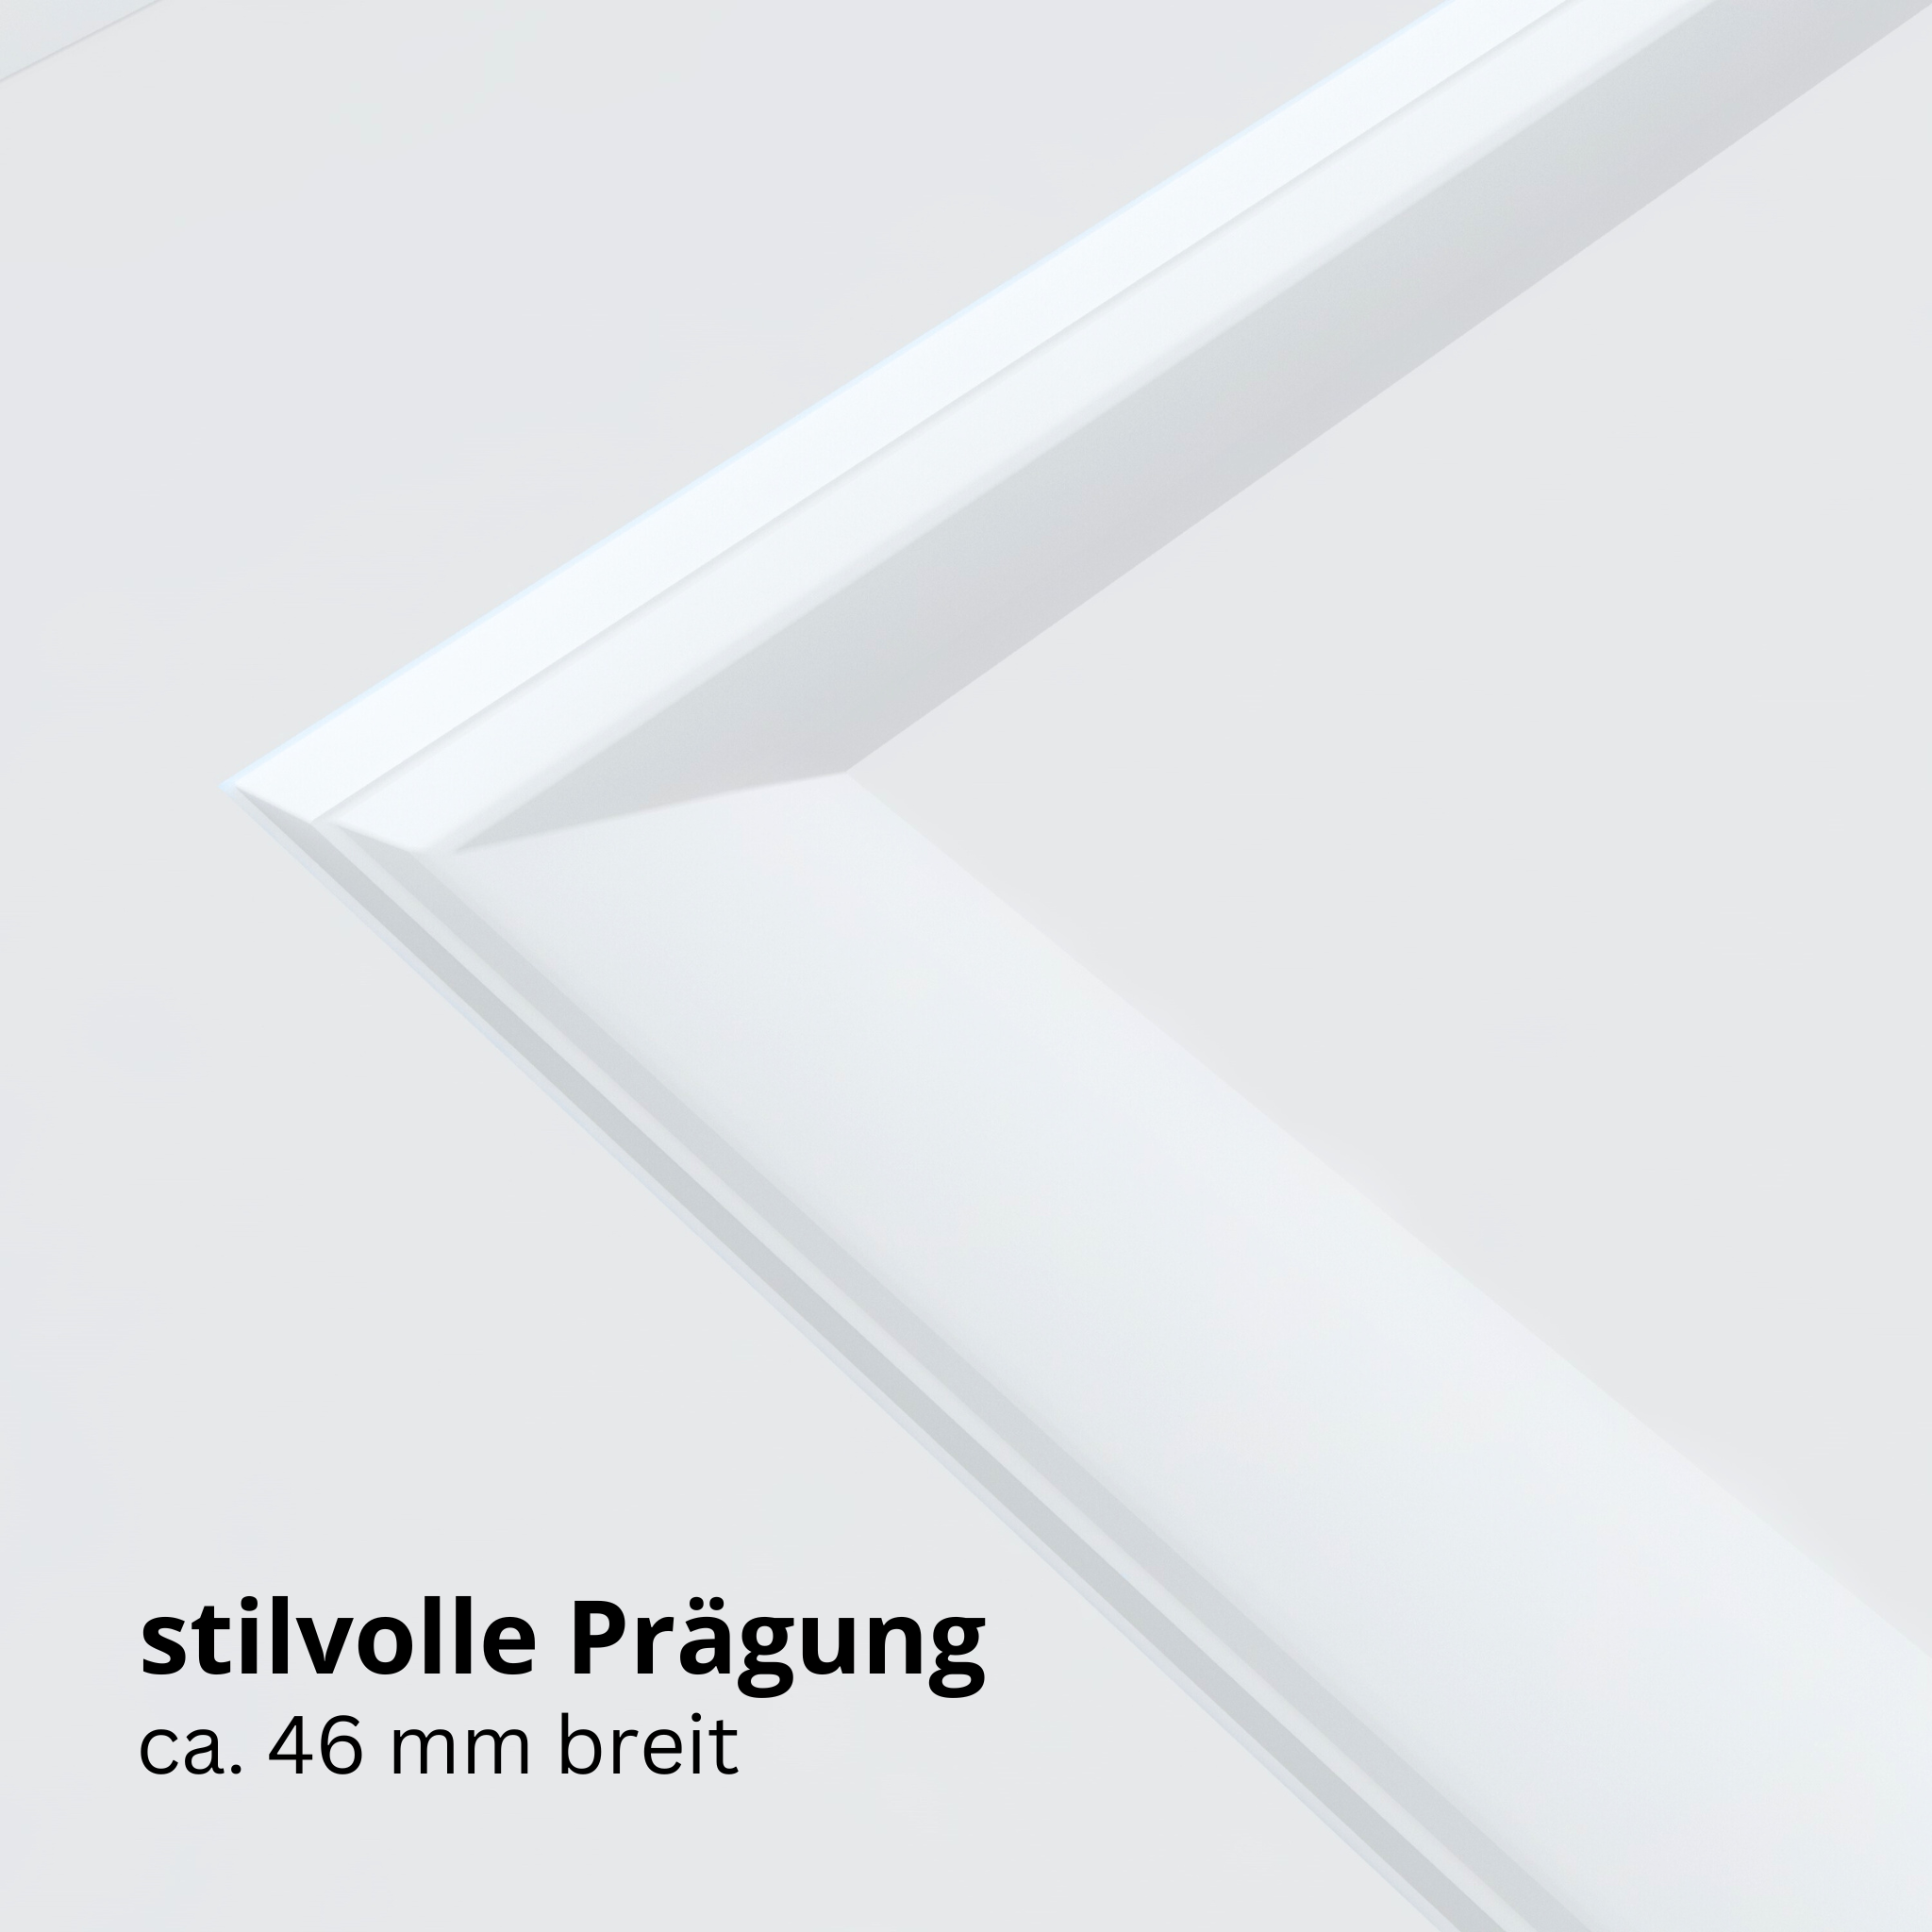 Wohnungseingangstür mit Zarge brillant-weiß 4 Kassetten Designkante SK3 / KK3 - Modell Stiltür K43